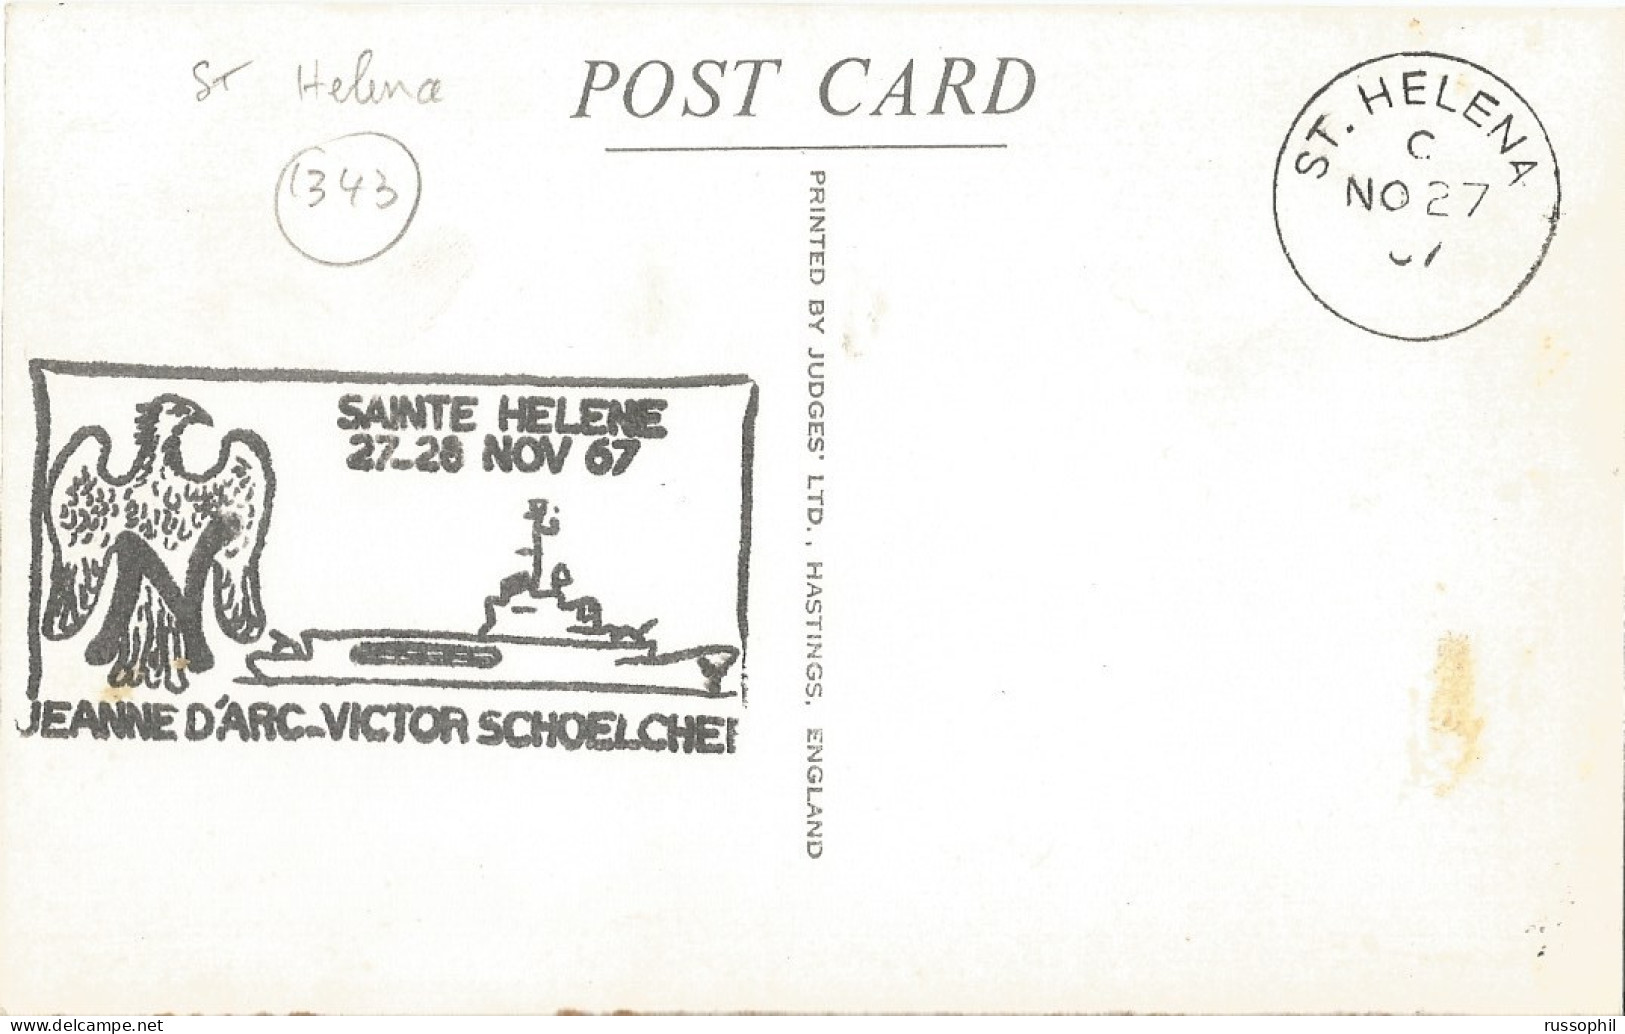 ST HELENA - JACOB'S LADDER, 699 STEPS - PUB. JUDGES LTD, HASTINGSREF REF #2  - FRENCH WAR SHIP " JEANNE D'ARC " - 1967 - St. Helena